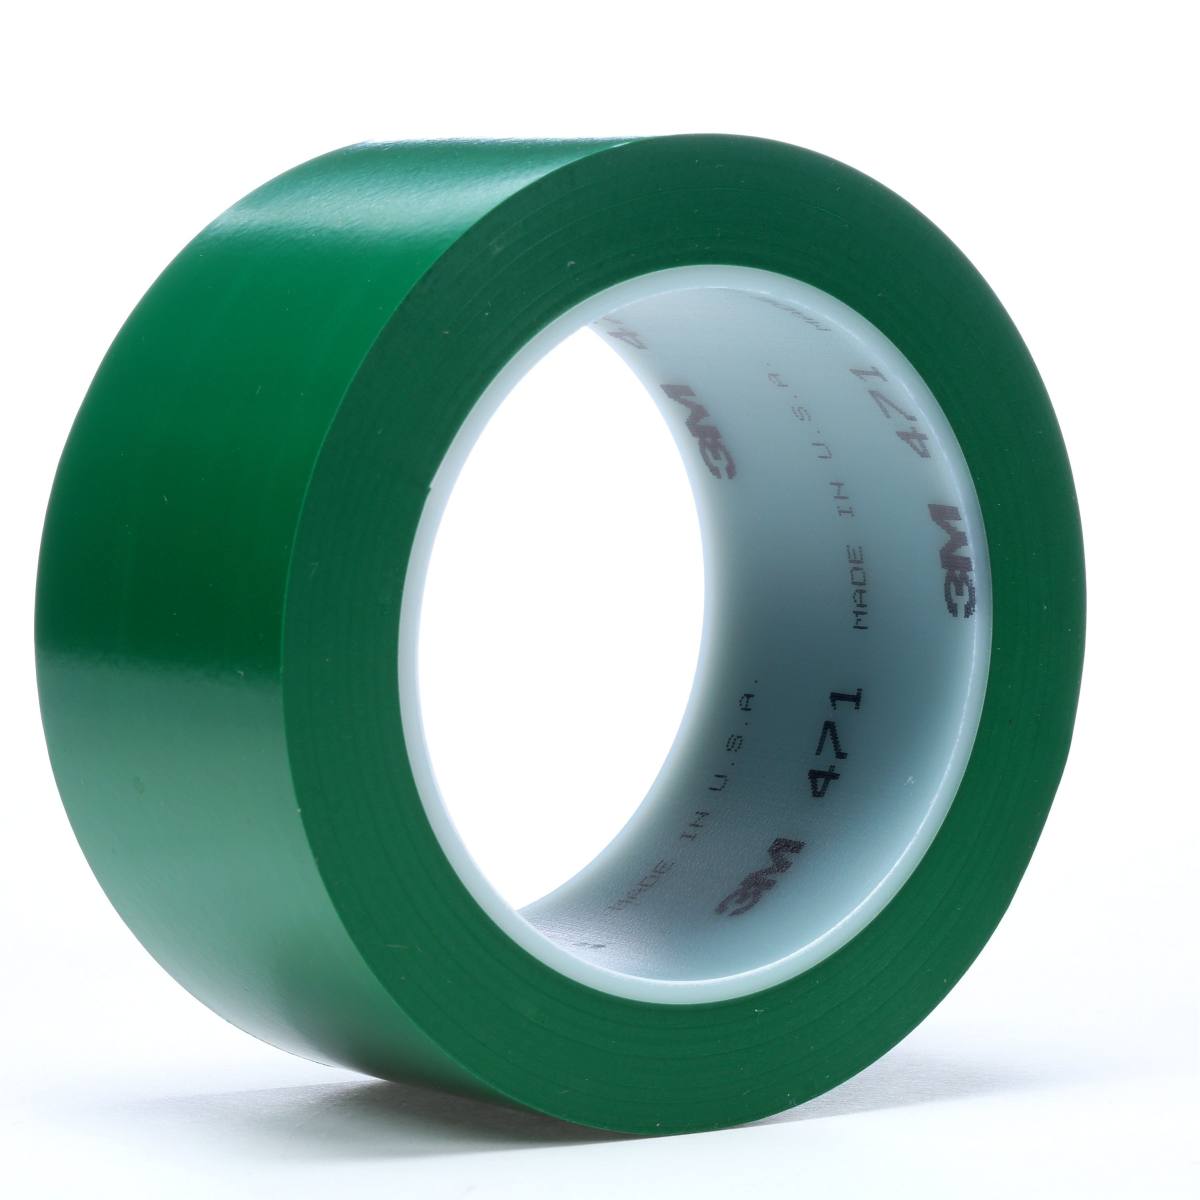 Nastro adesivo 3M in PVC morbido 471 F, verde, 9 mm x 33 m, 0,13 mm